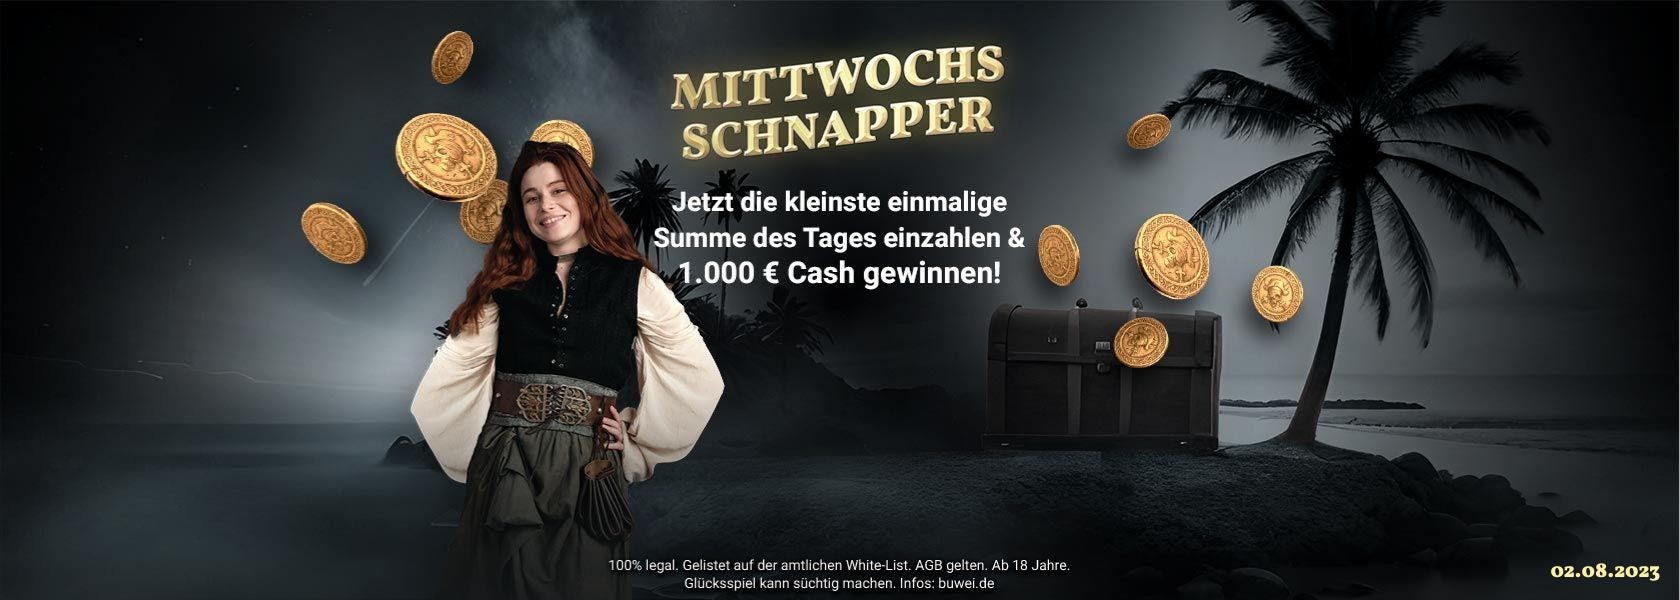 jackpotpiraten-titelbild-mittwochs-schnapper-020823